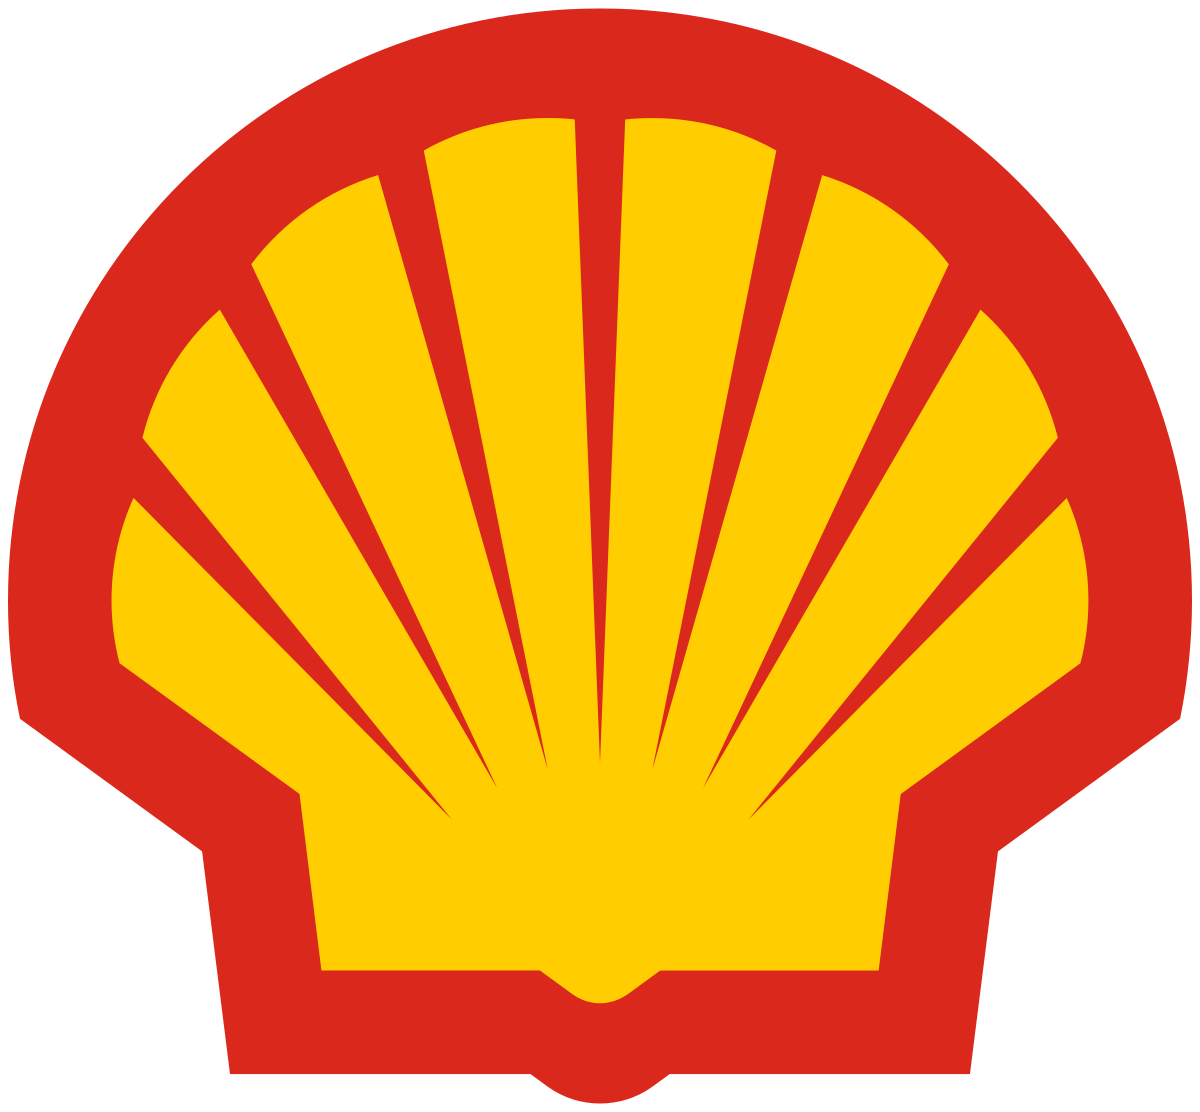 Shell Secondary Logo